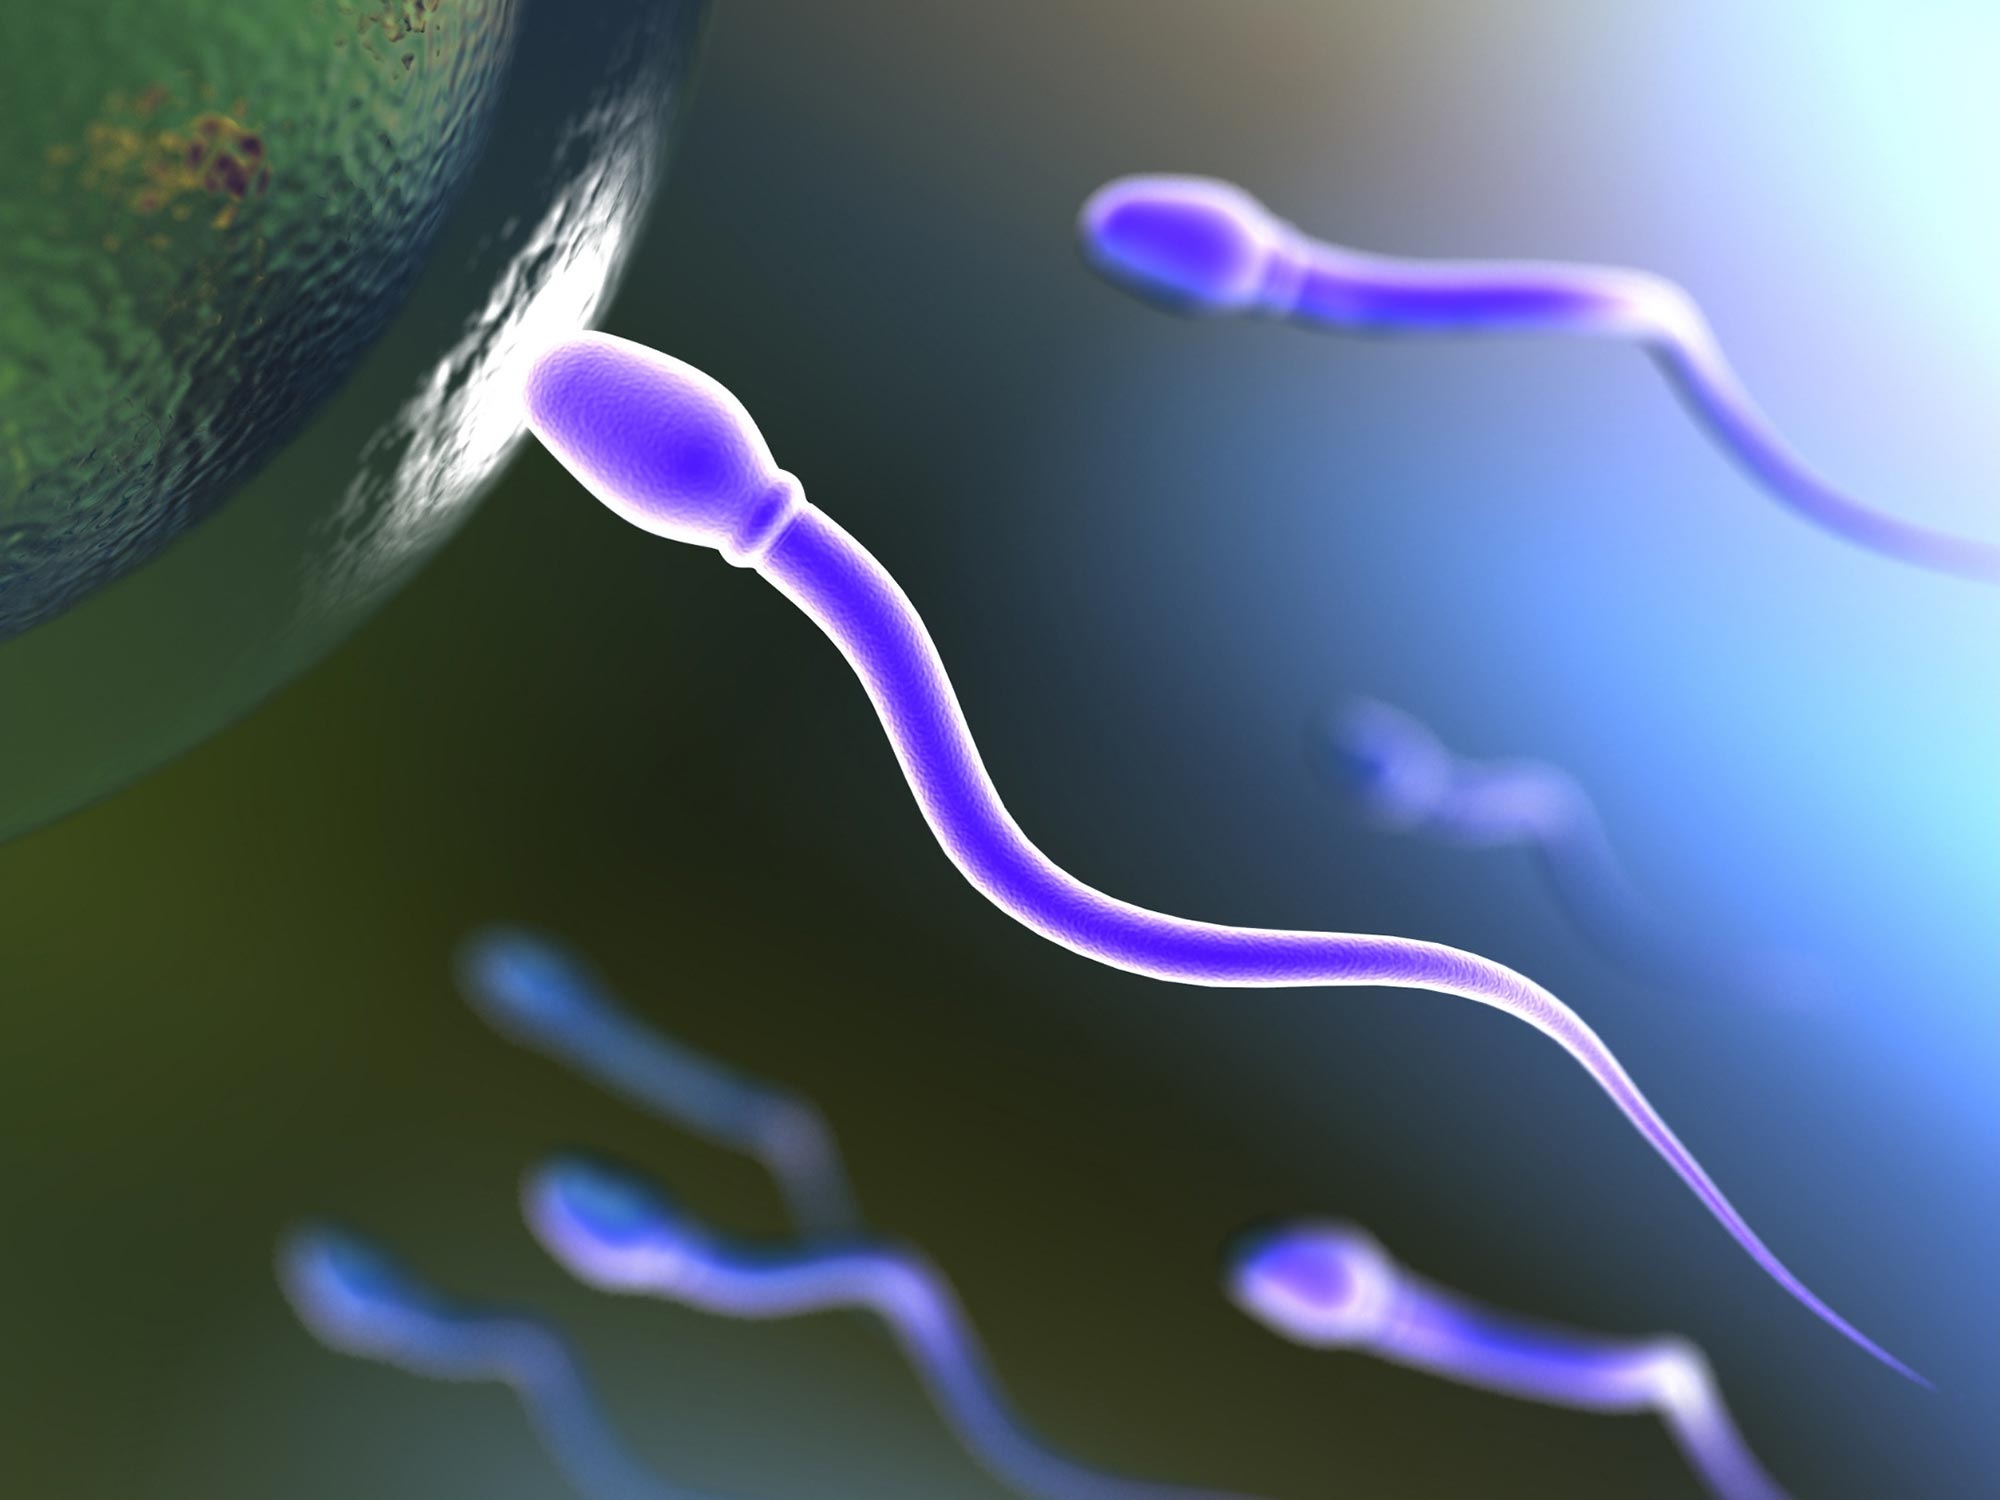 Un punto de inflexión para los hombres infértiles: un nuevo diagnóstico detecta espermatozoides viables